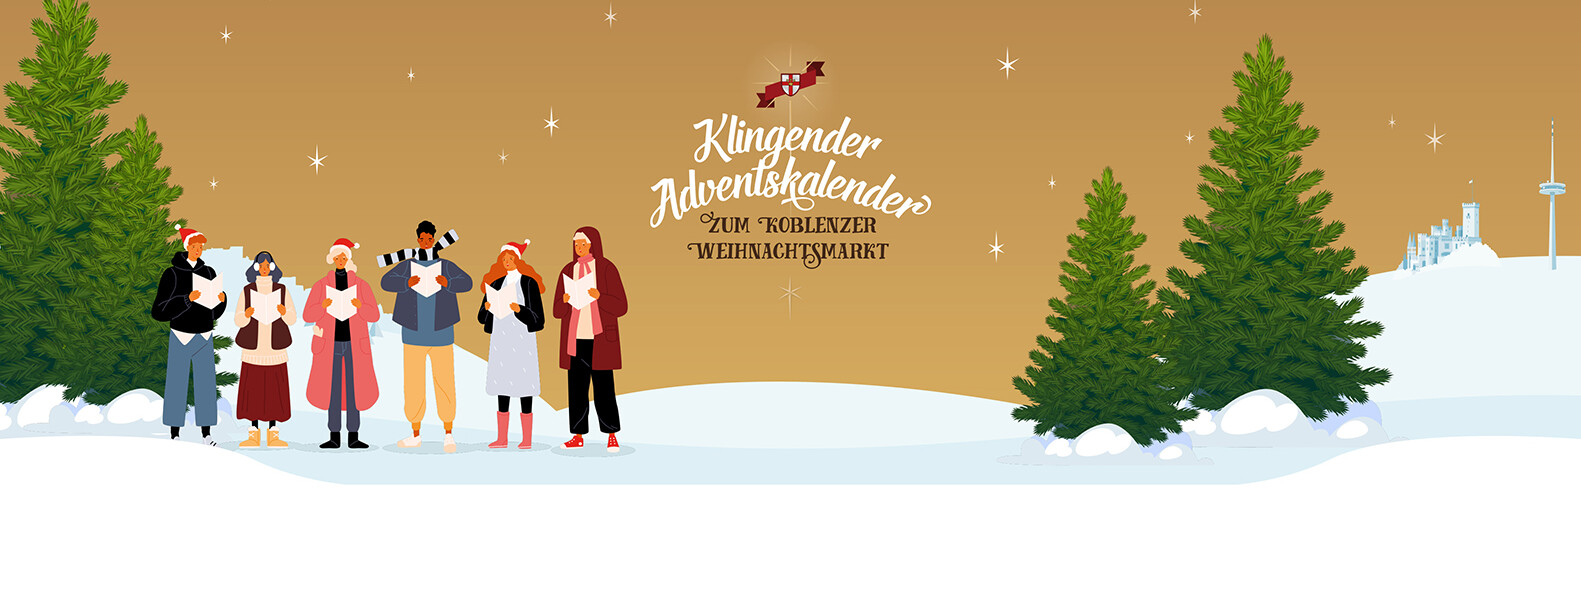 Personen mit Liedheften auf schneebedeckter Landschaft mit Weihnachtsbäumen im Hintergrund ©Koblenz-Touristik GmbH 